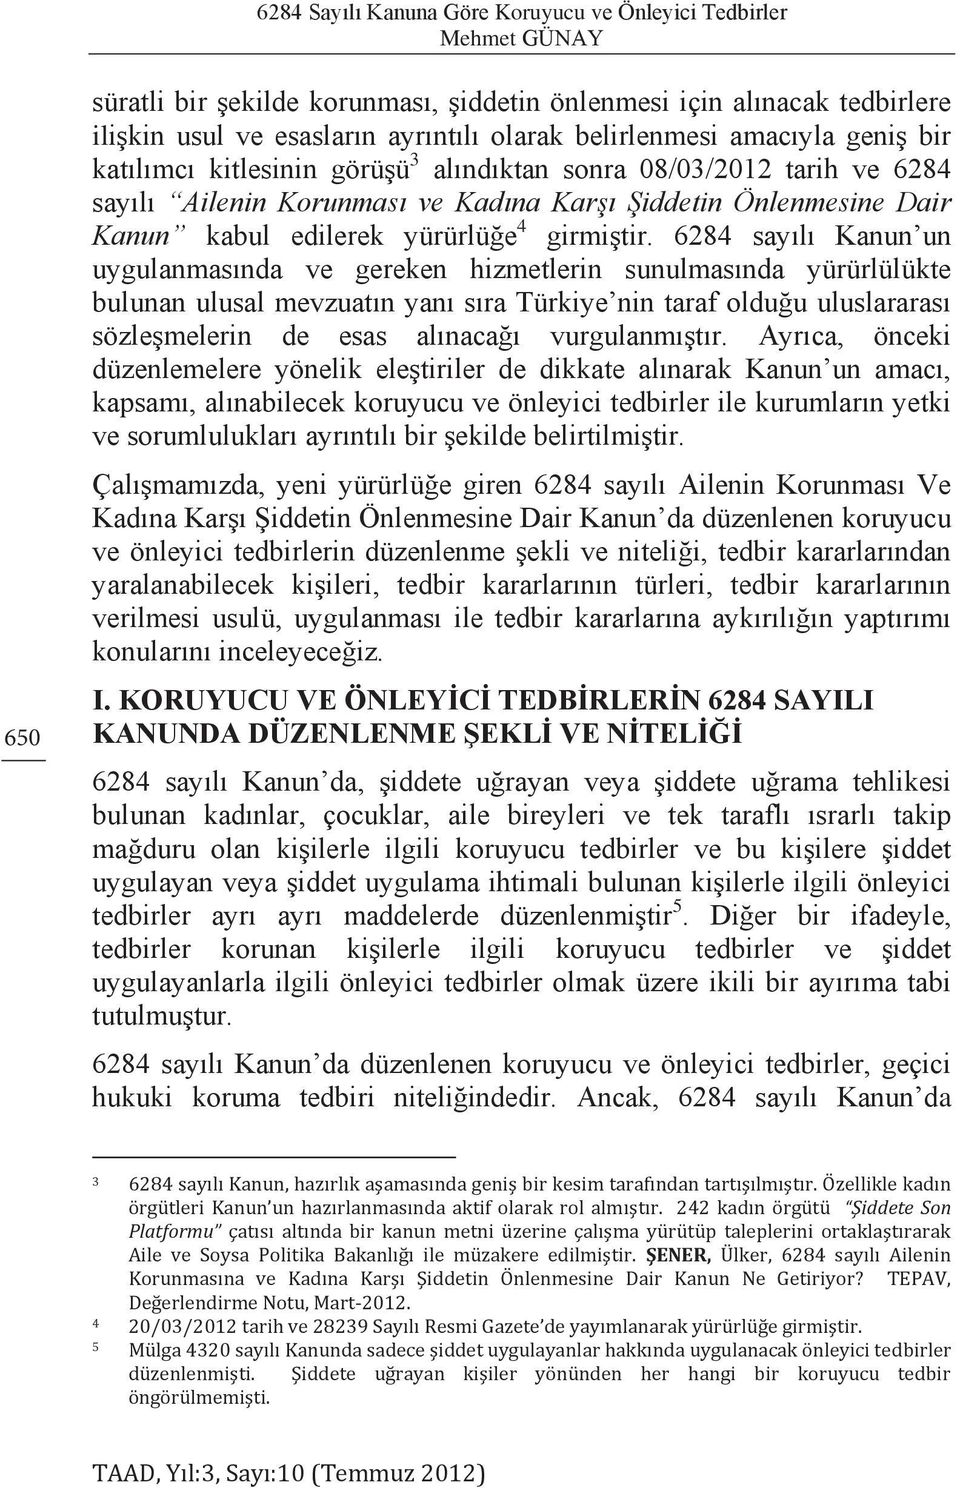 6284 sayılı Kanun un uygulanmasında ve gereken hizmetlerin sunulmasında yürürlülükte bulunan ulusal mevzuatın yanı sıra Türkiye nin taraf olduğu uluslararası sözleşmelerin de esas alınacağı